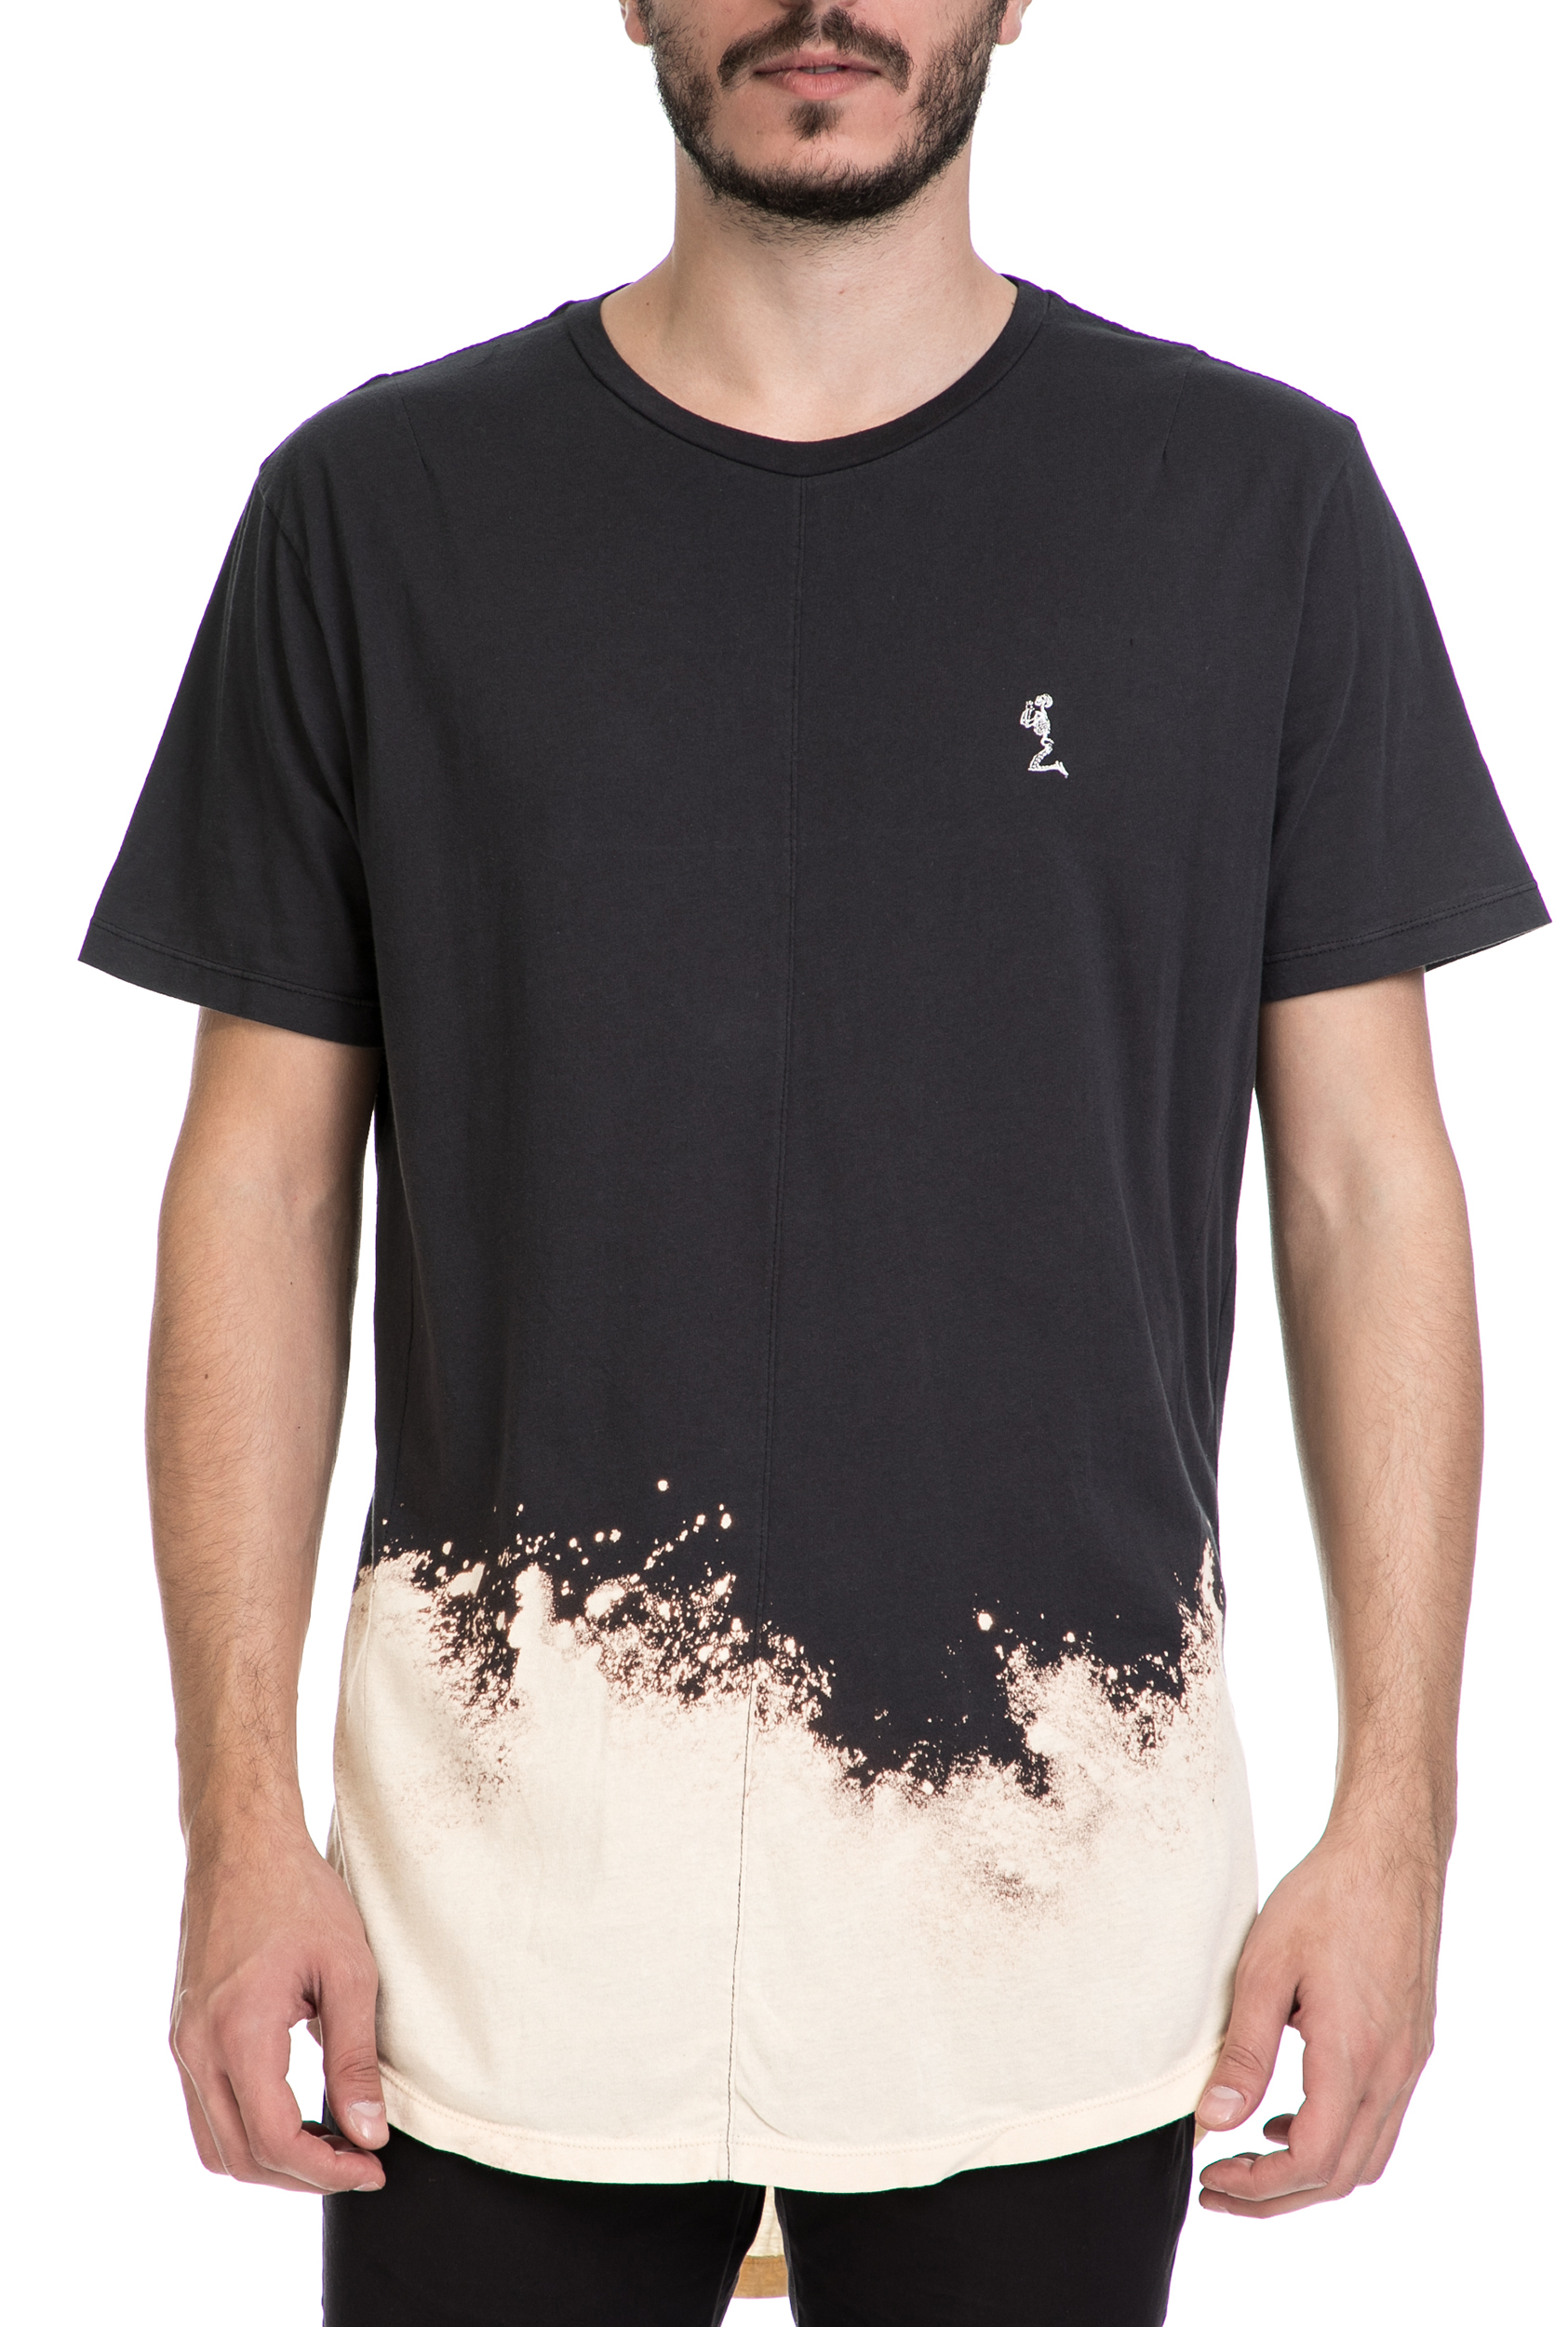 Ανδρικά/Ρούχα/Μπλούζες/Κοντομάνικες RELIGION - Ανδρικό T-shirt FROST RELIGION μαύρο-μπεζ